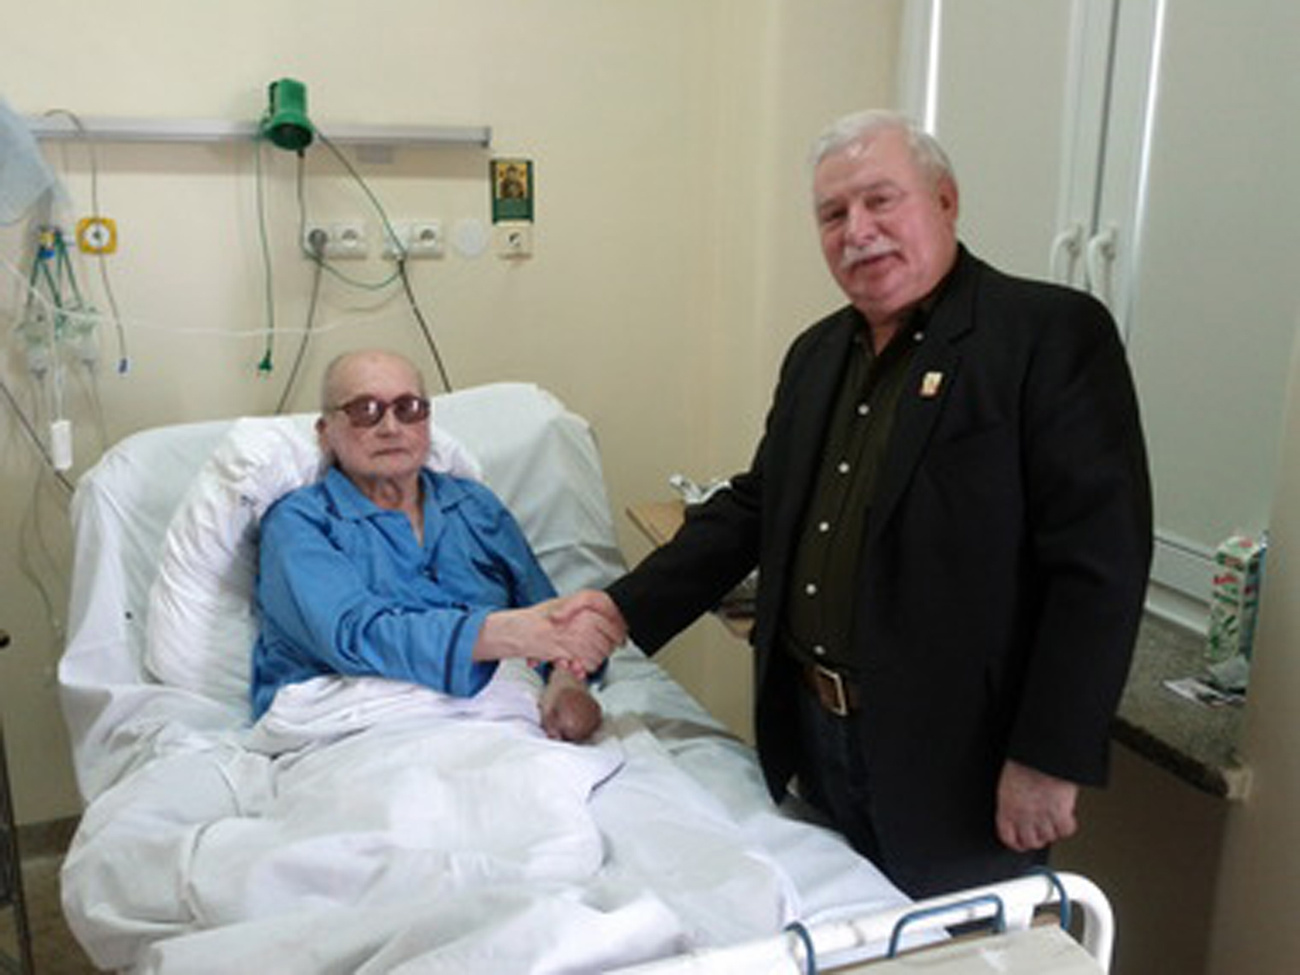 2011 szeptemberében Lech Walesa meglátogatta a kórházban Jaruzelskit. A tábornok által a kommunizmus alatt üldözött Walesa a motorbalesetet szenvedett fiát látogatta meg, majd amikor megtudta, hogy ott fekszik Jaruzelski, beugrott a kortermébe